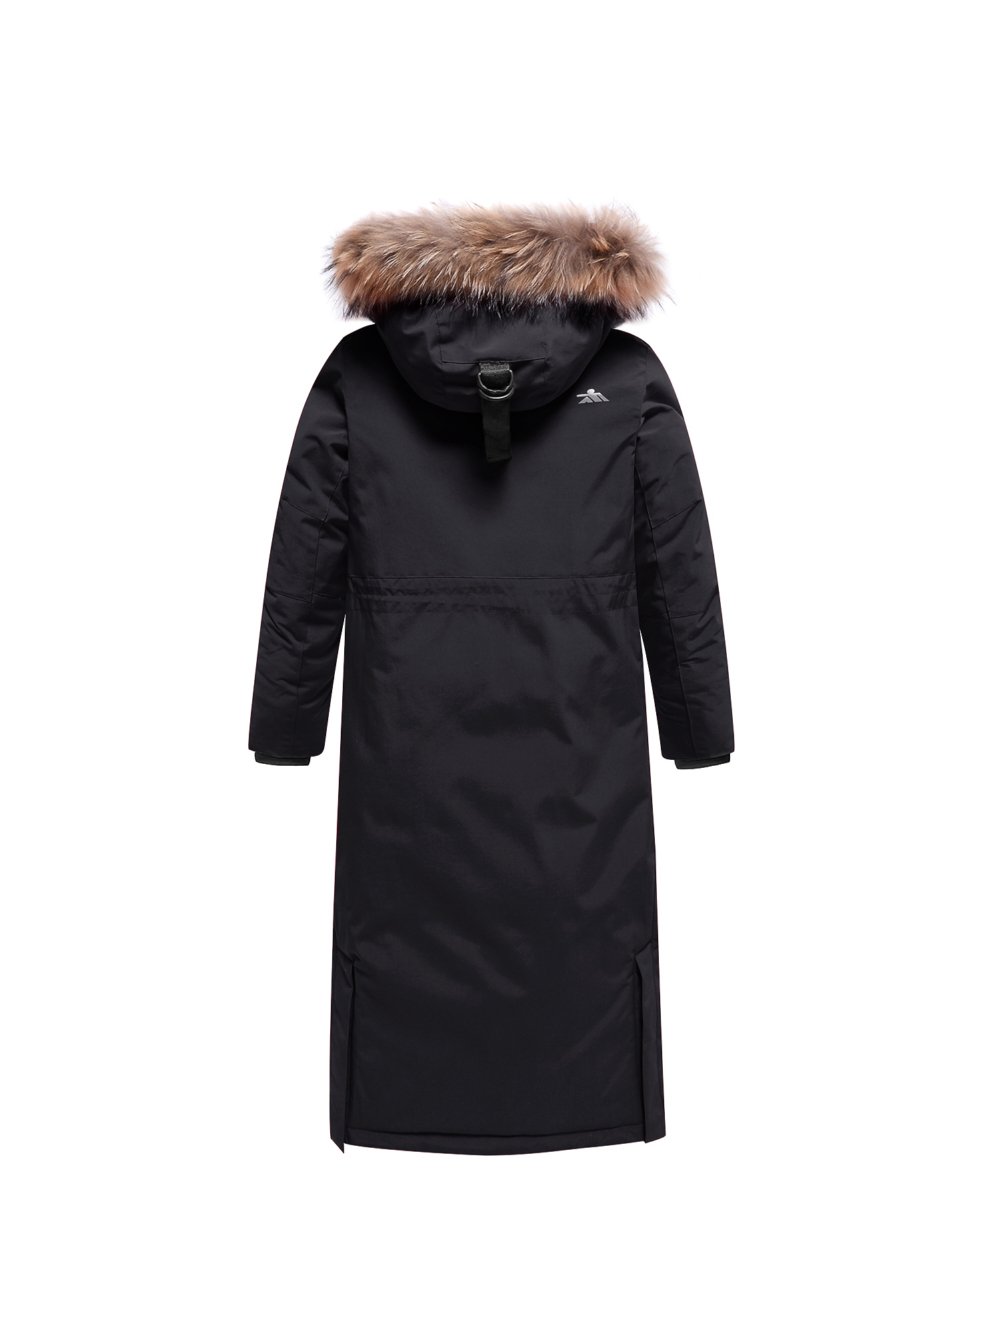 Купить куртку парку для девочки оптом от производителя недорого в Москве 9344Ch 1